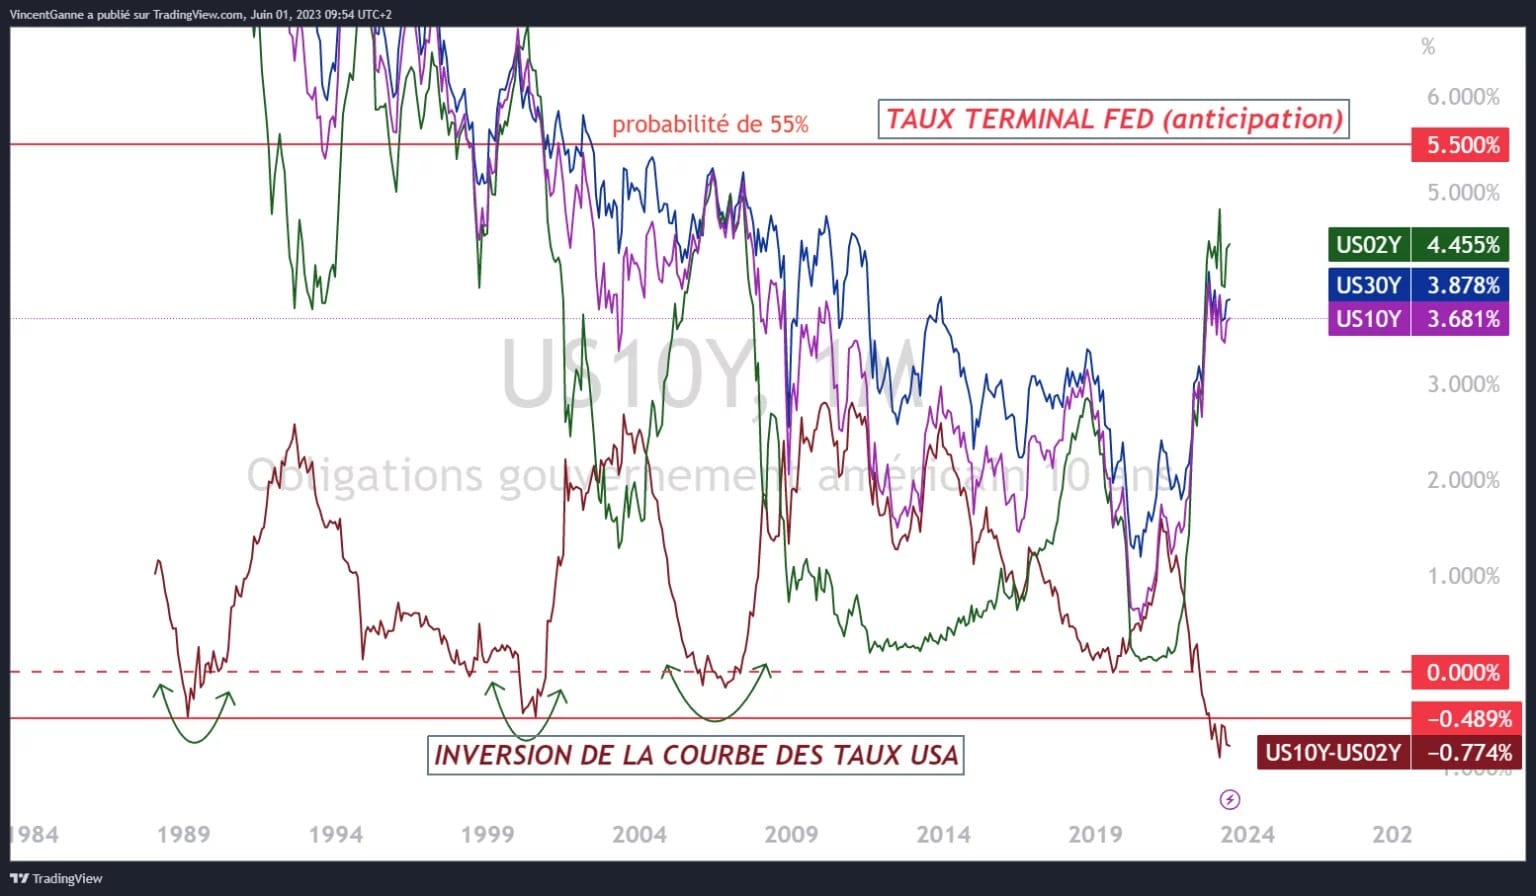 Gráfico elaborado con el sitio web TradingView, que yuxtapone los rendimientos de los bonos estadounidenses a 2, 10 y 30 años y el tipo terminal más probable de la Fed